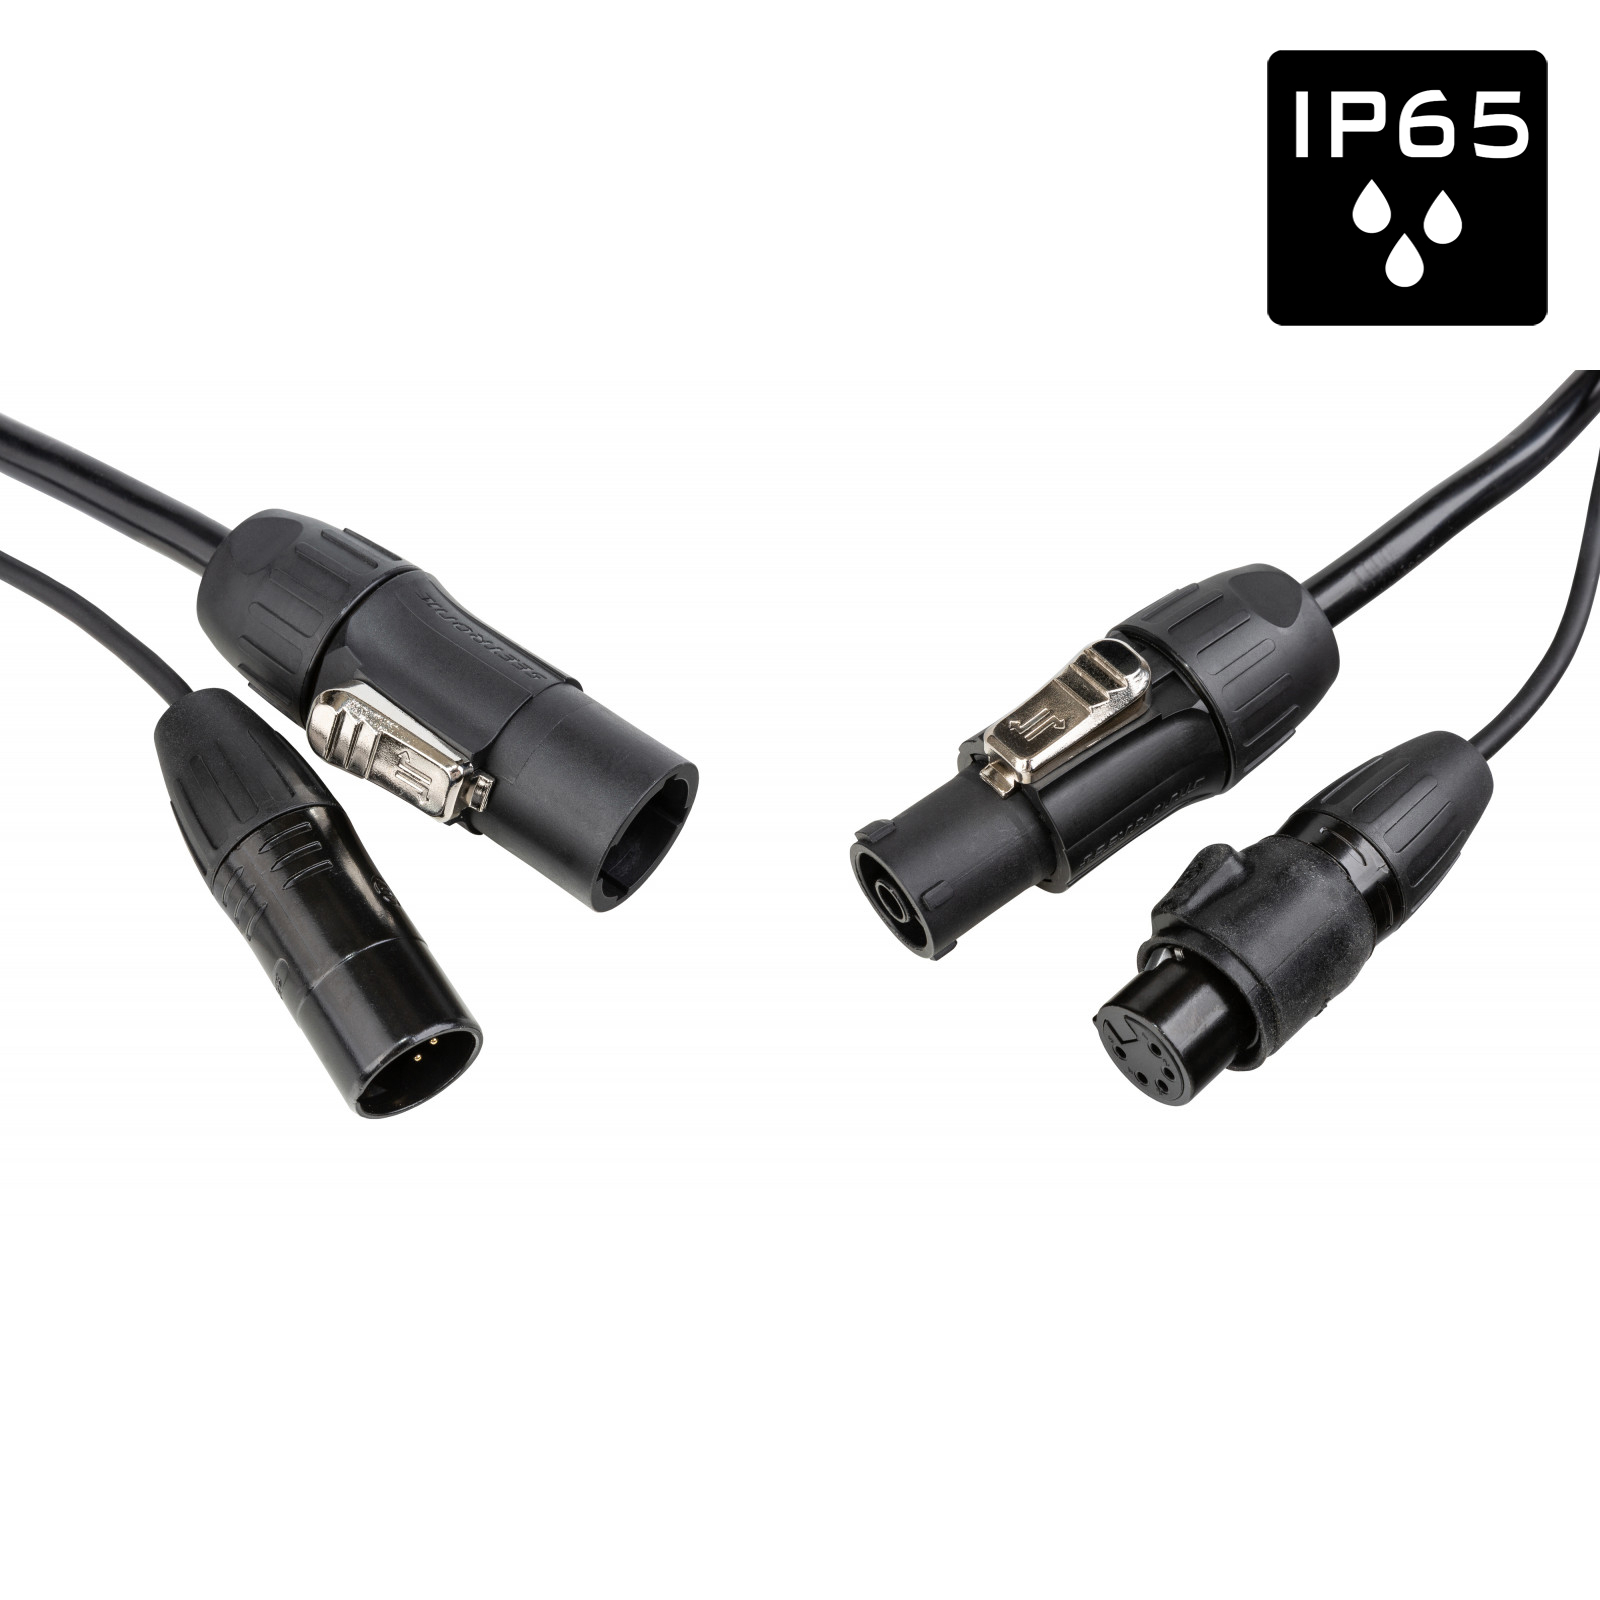 Câble IP65 avec connecteurs Seetronic XLR 5p et compatibles True1 - Longueur 10m